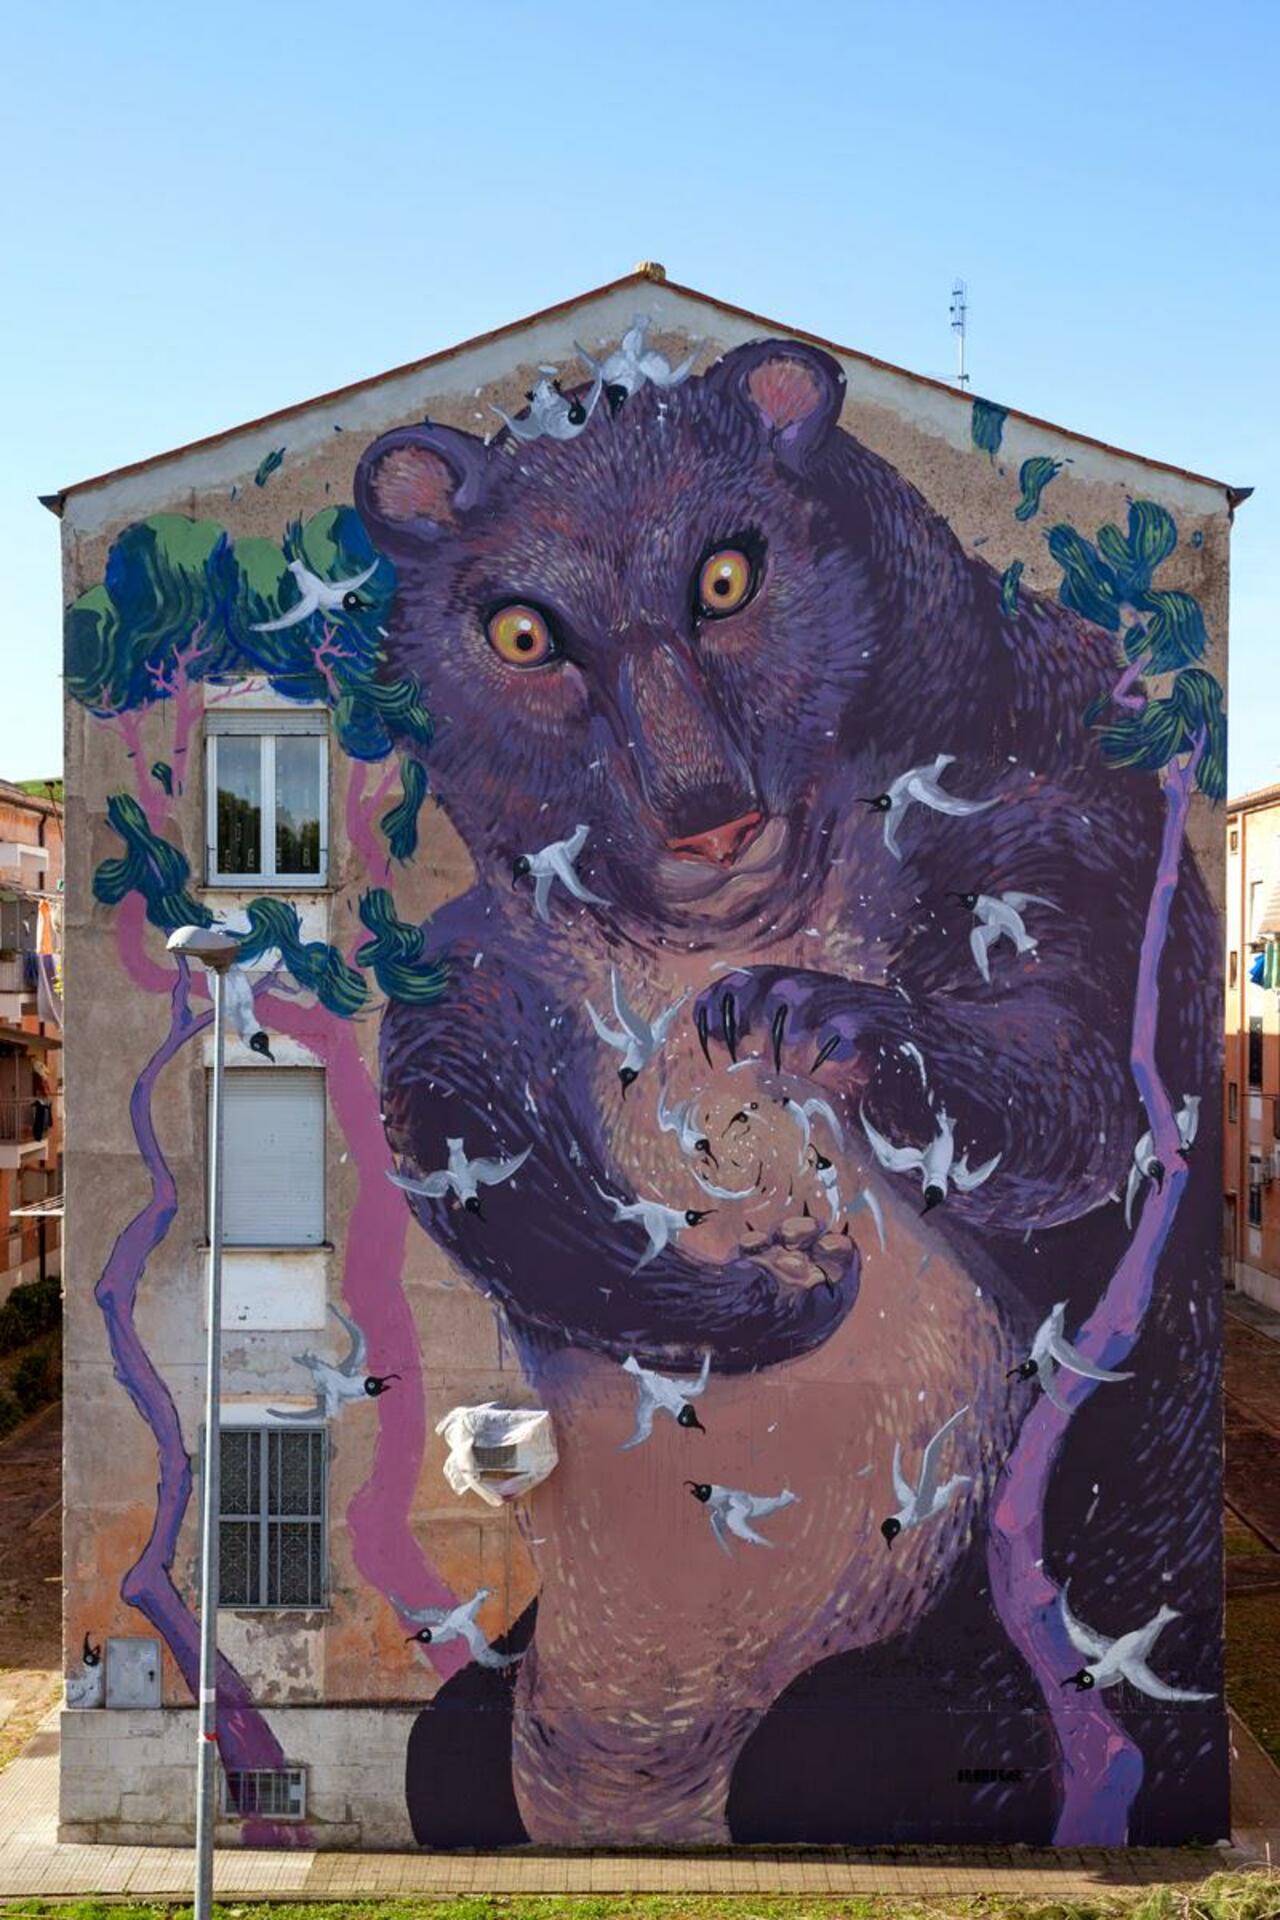 Murals by Hitnes in Rome, Italy

#streetart #urbanart #mural #art #graffiti http://t.co/KJvT8Zvieq